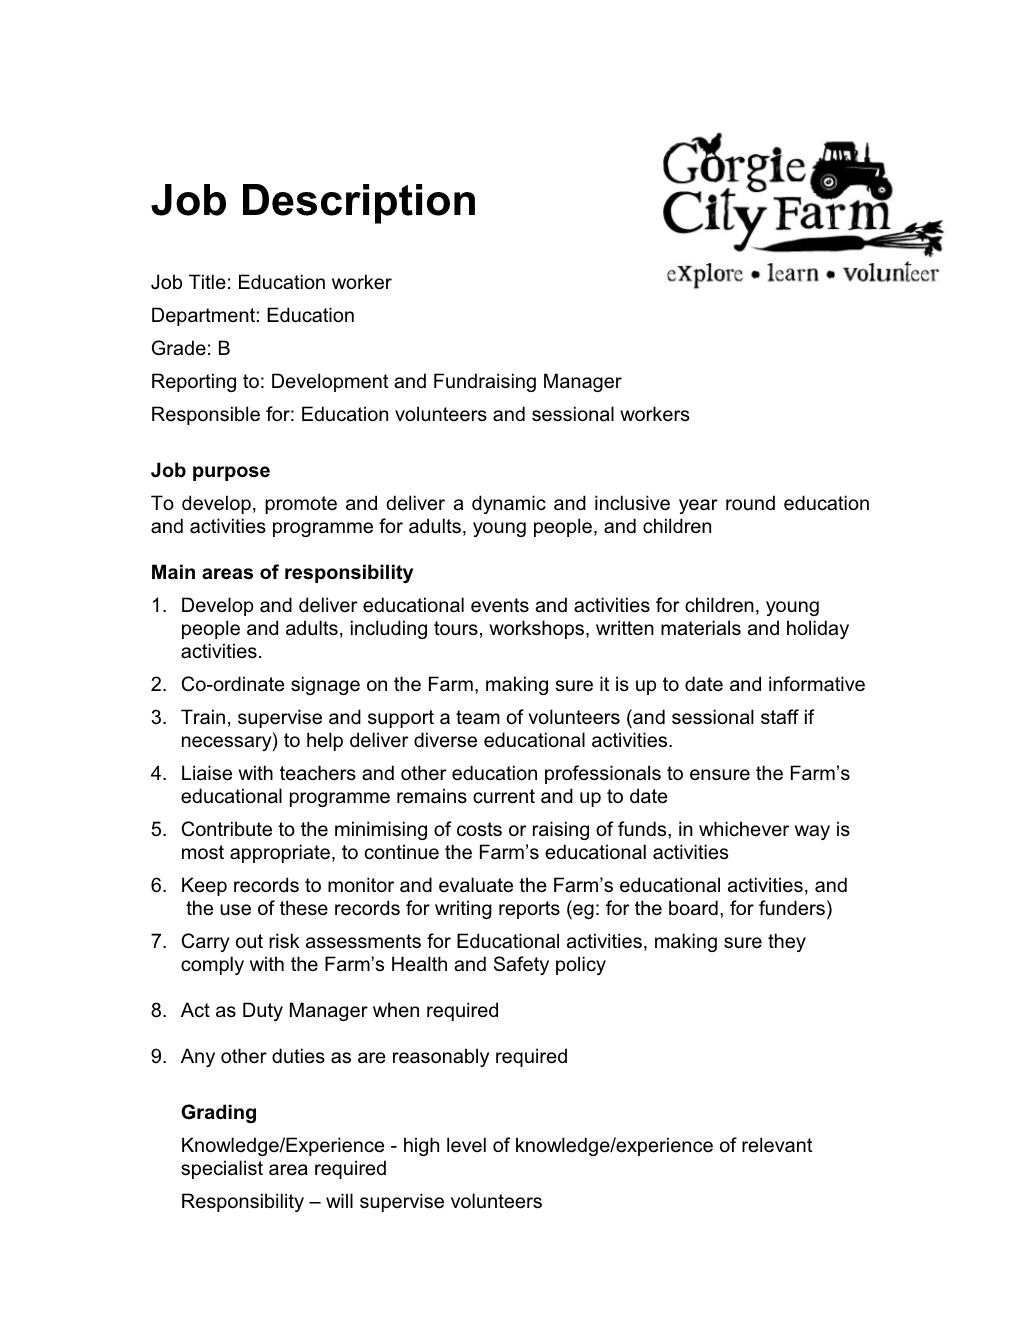 Job Description Gorgie City Farm Catering Assistant